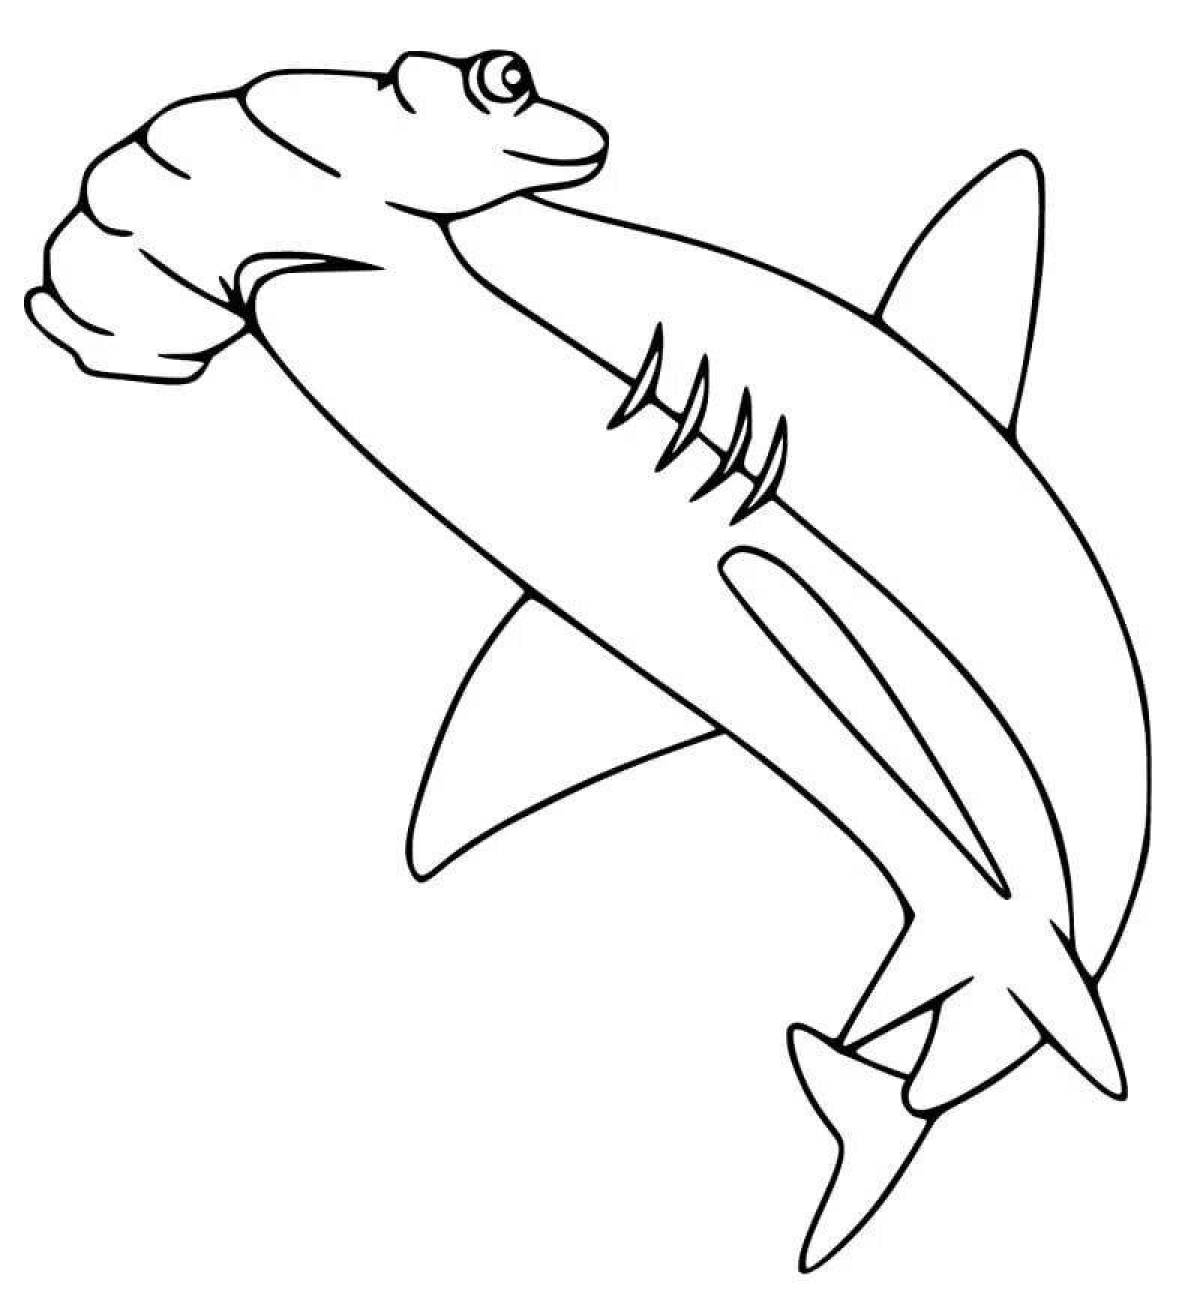 Иллюстрация книжки-раскраски акула-молот